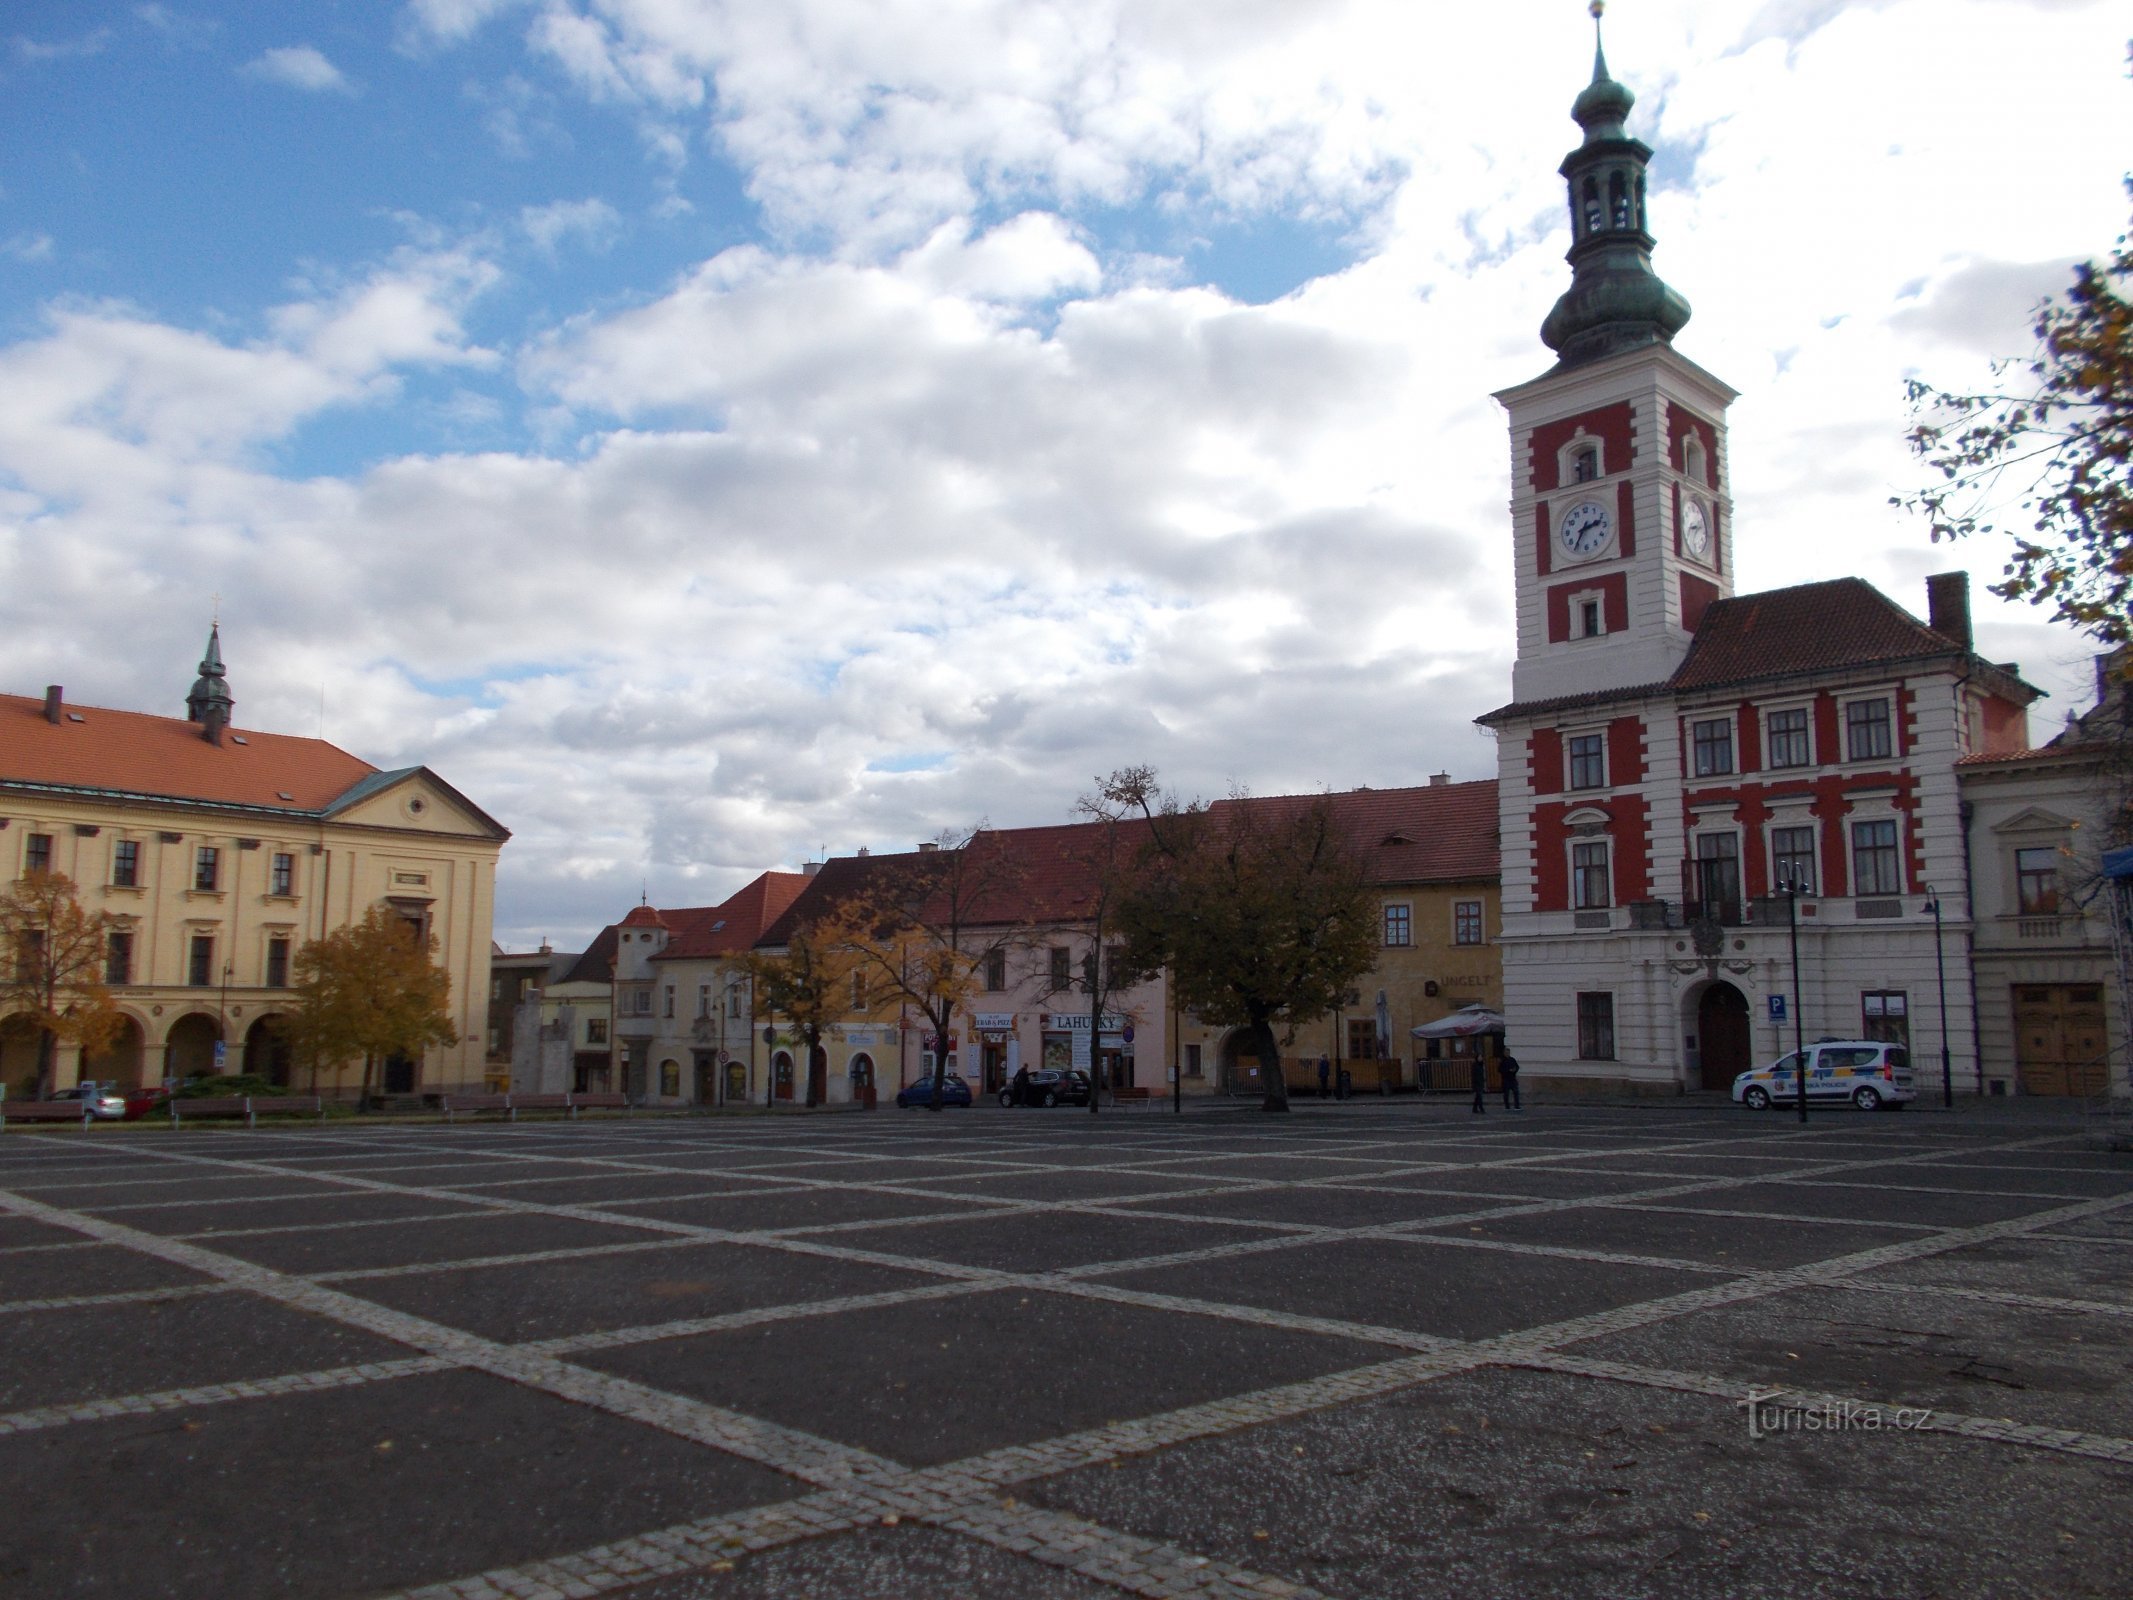 Quảng trường Masaryk với Tòa thị chính